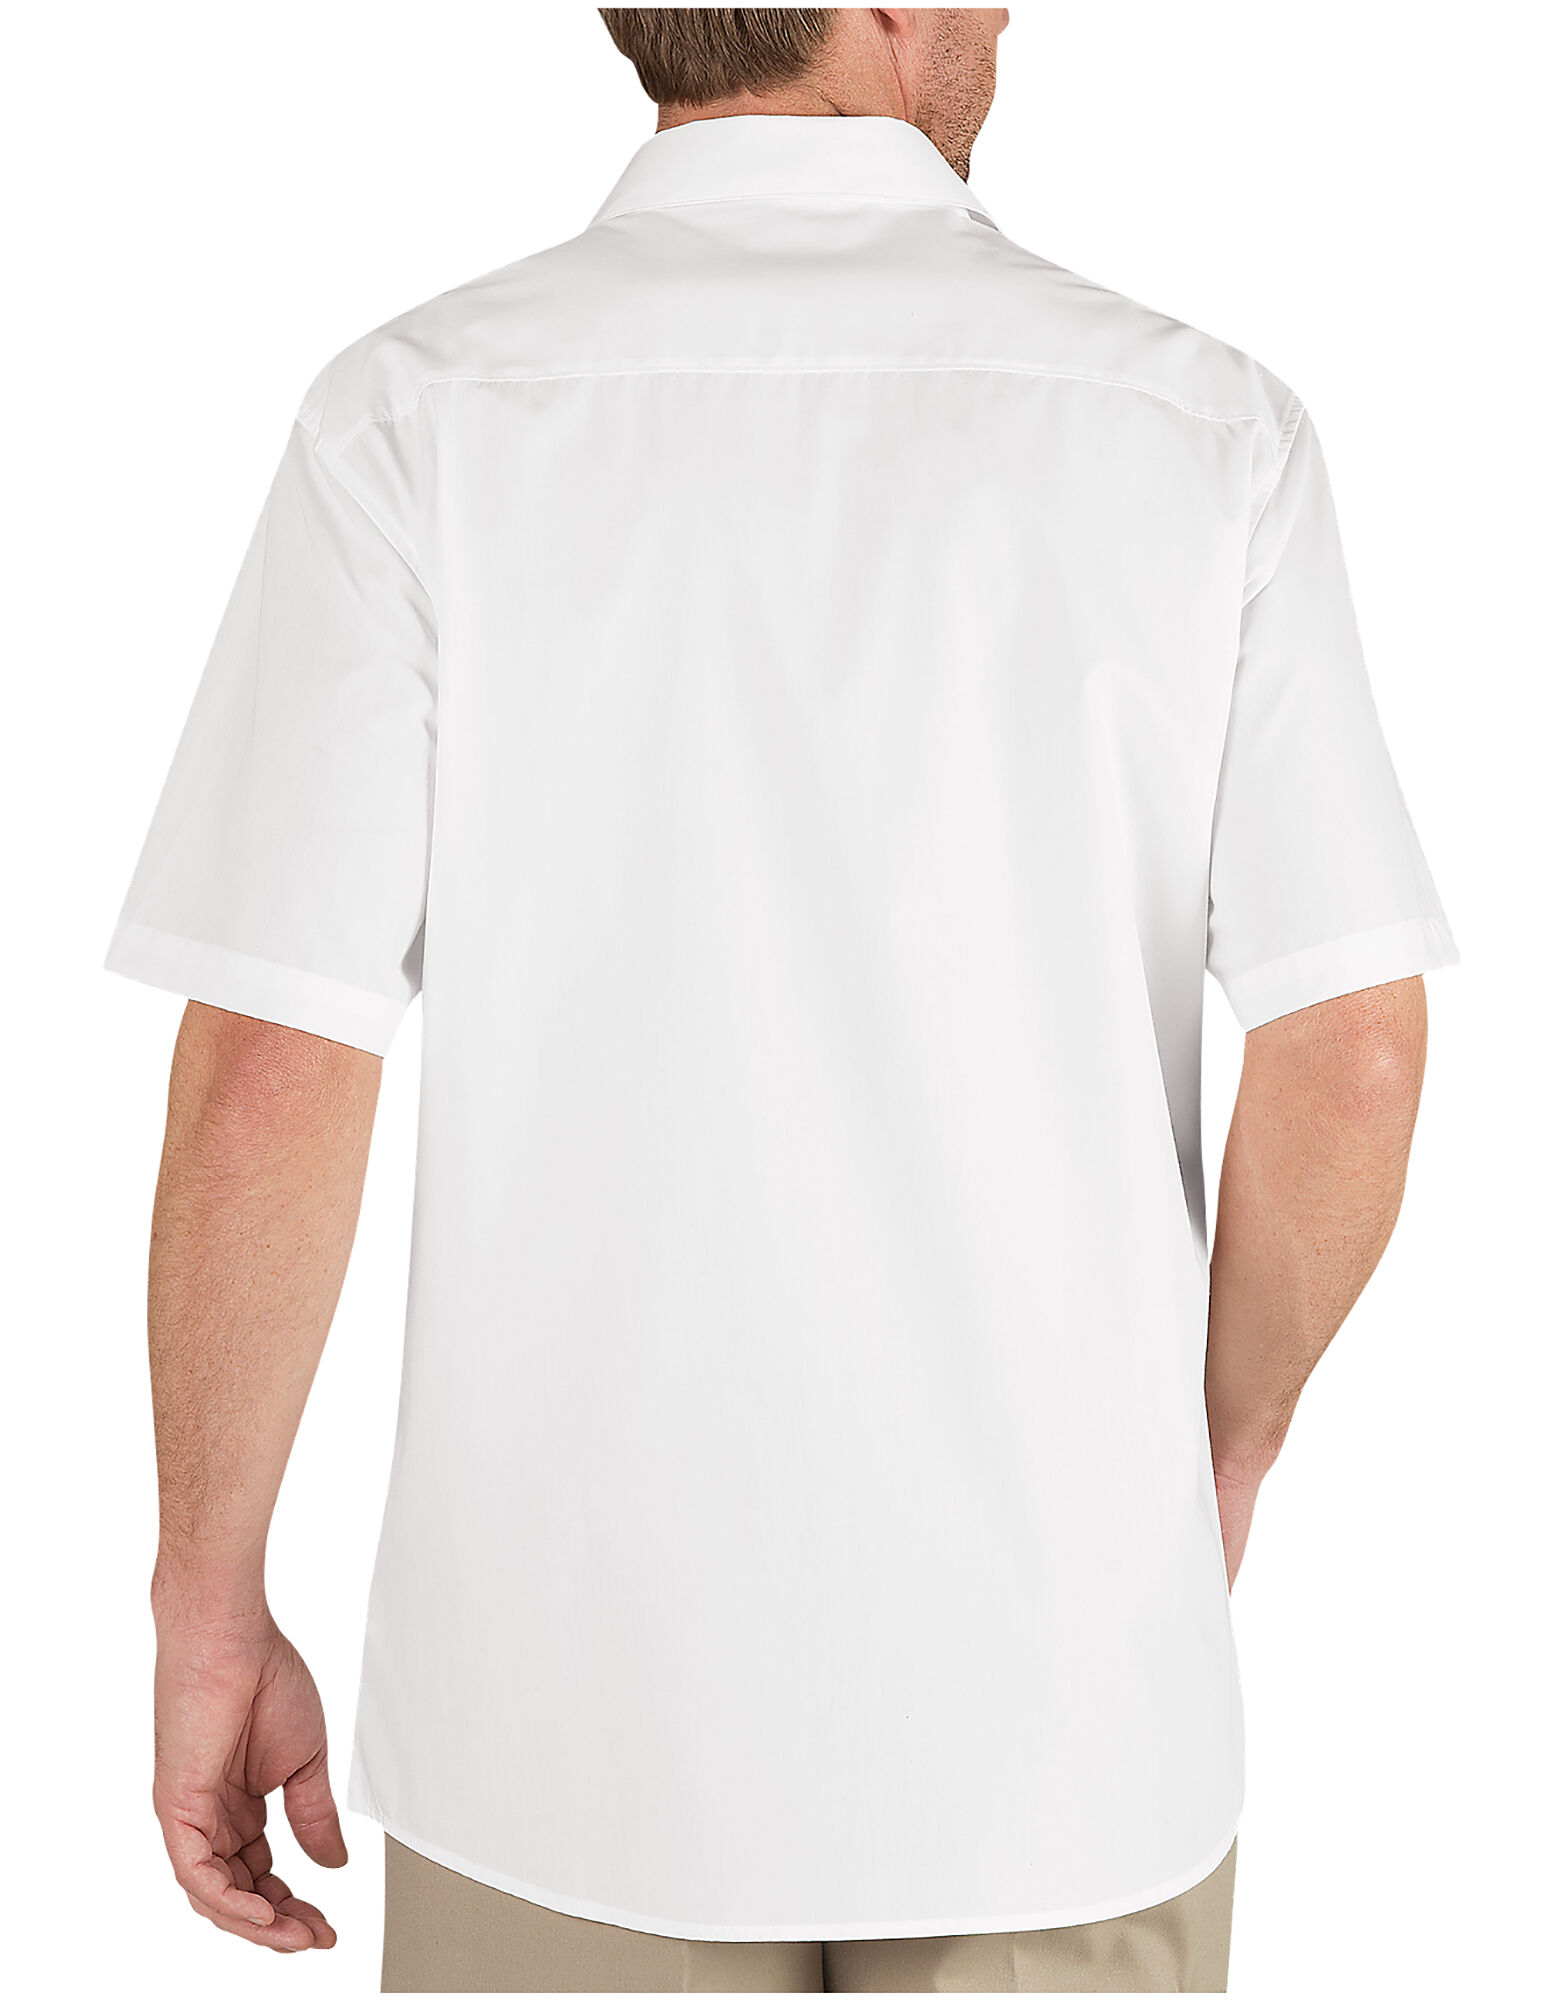 Short Sleeve Dress Shirt | Executive Men's Shirt | Dickies